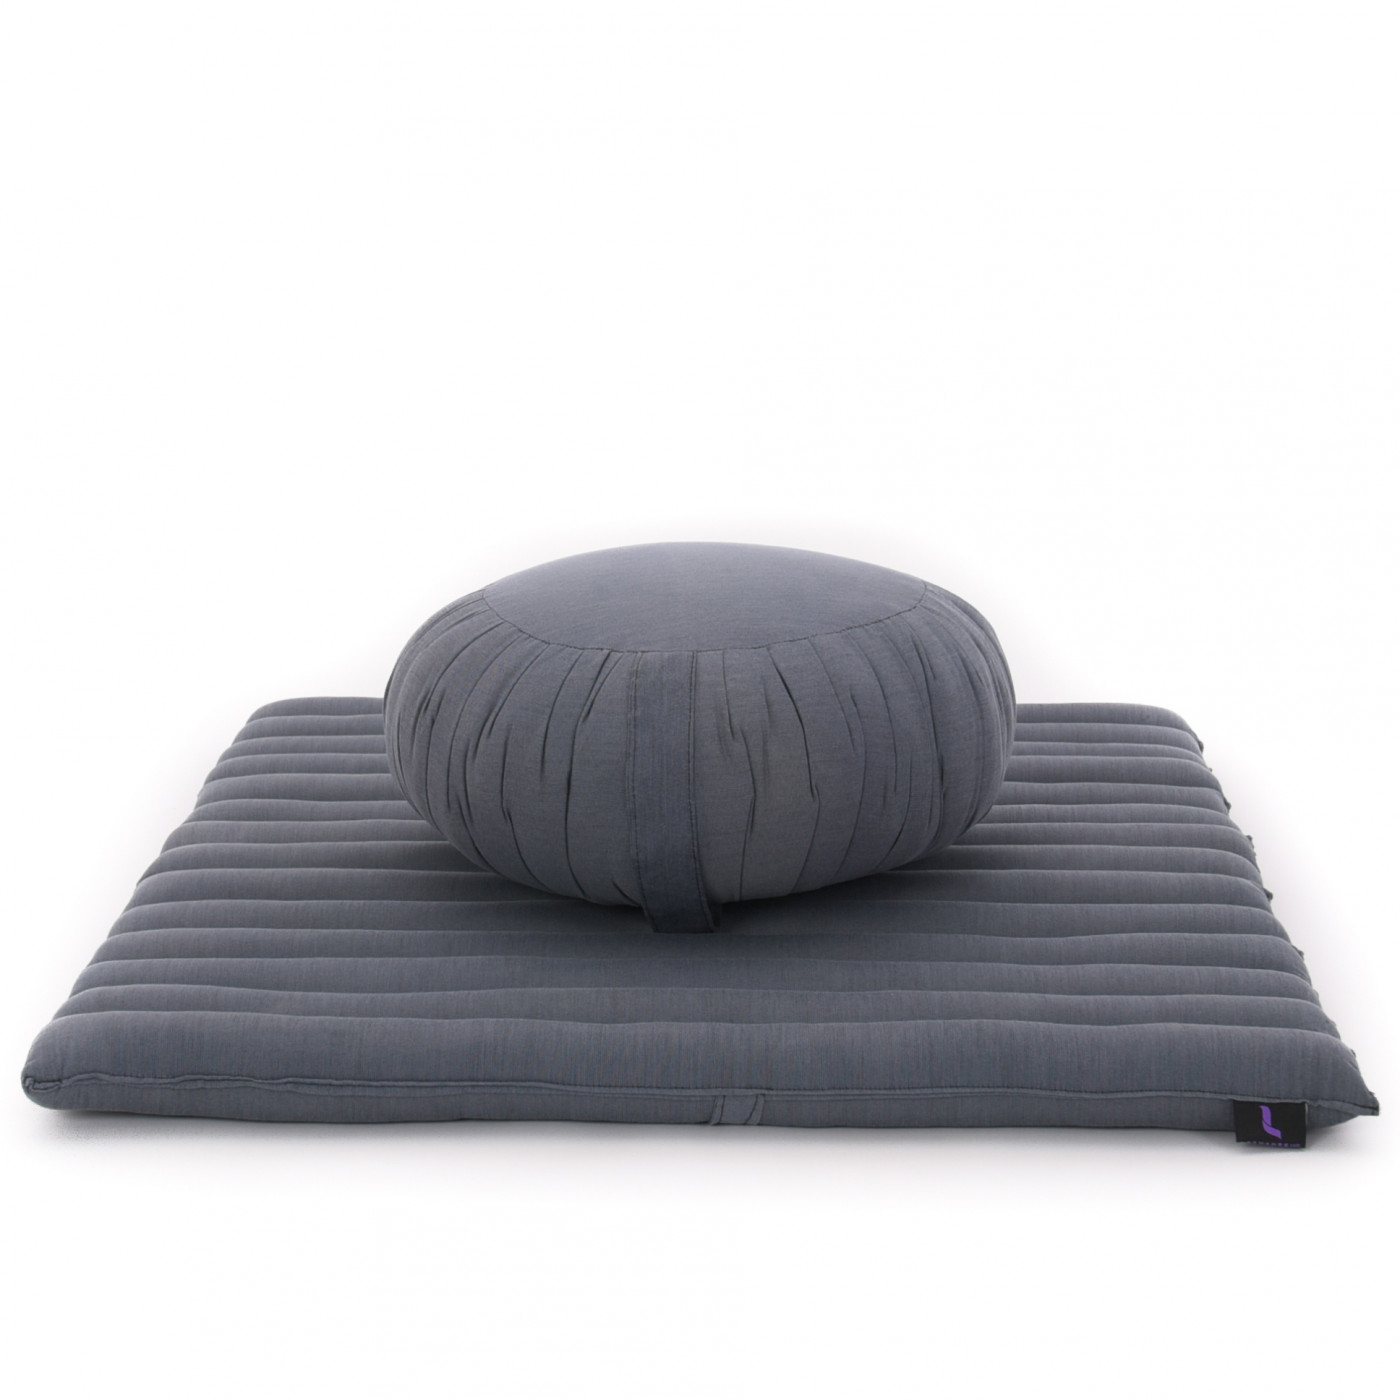 Imbottitura solida per un comfort e una stabilità ottimali Alta densità ANADEO YogaProducts Cuscino standard per yoga e meditazione Zafu Materiale organico 100% imbottito in kapok 